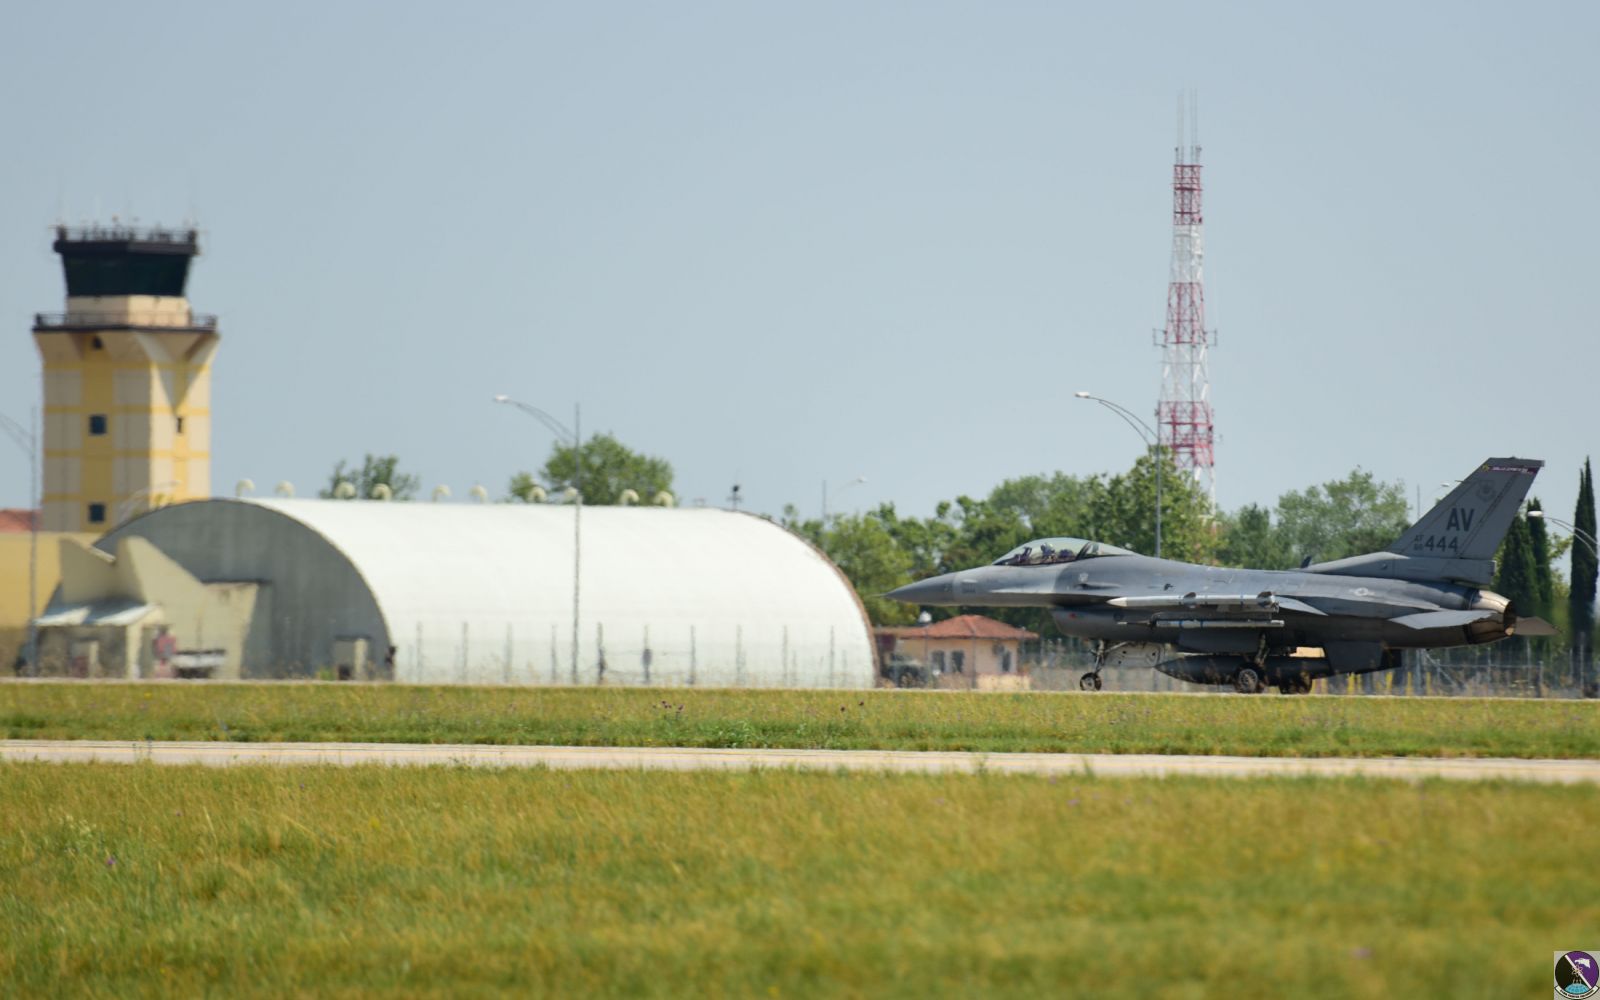 F-16 Fighting Falcon prepares for flight